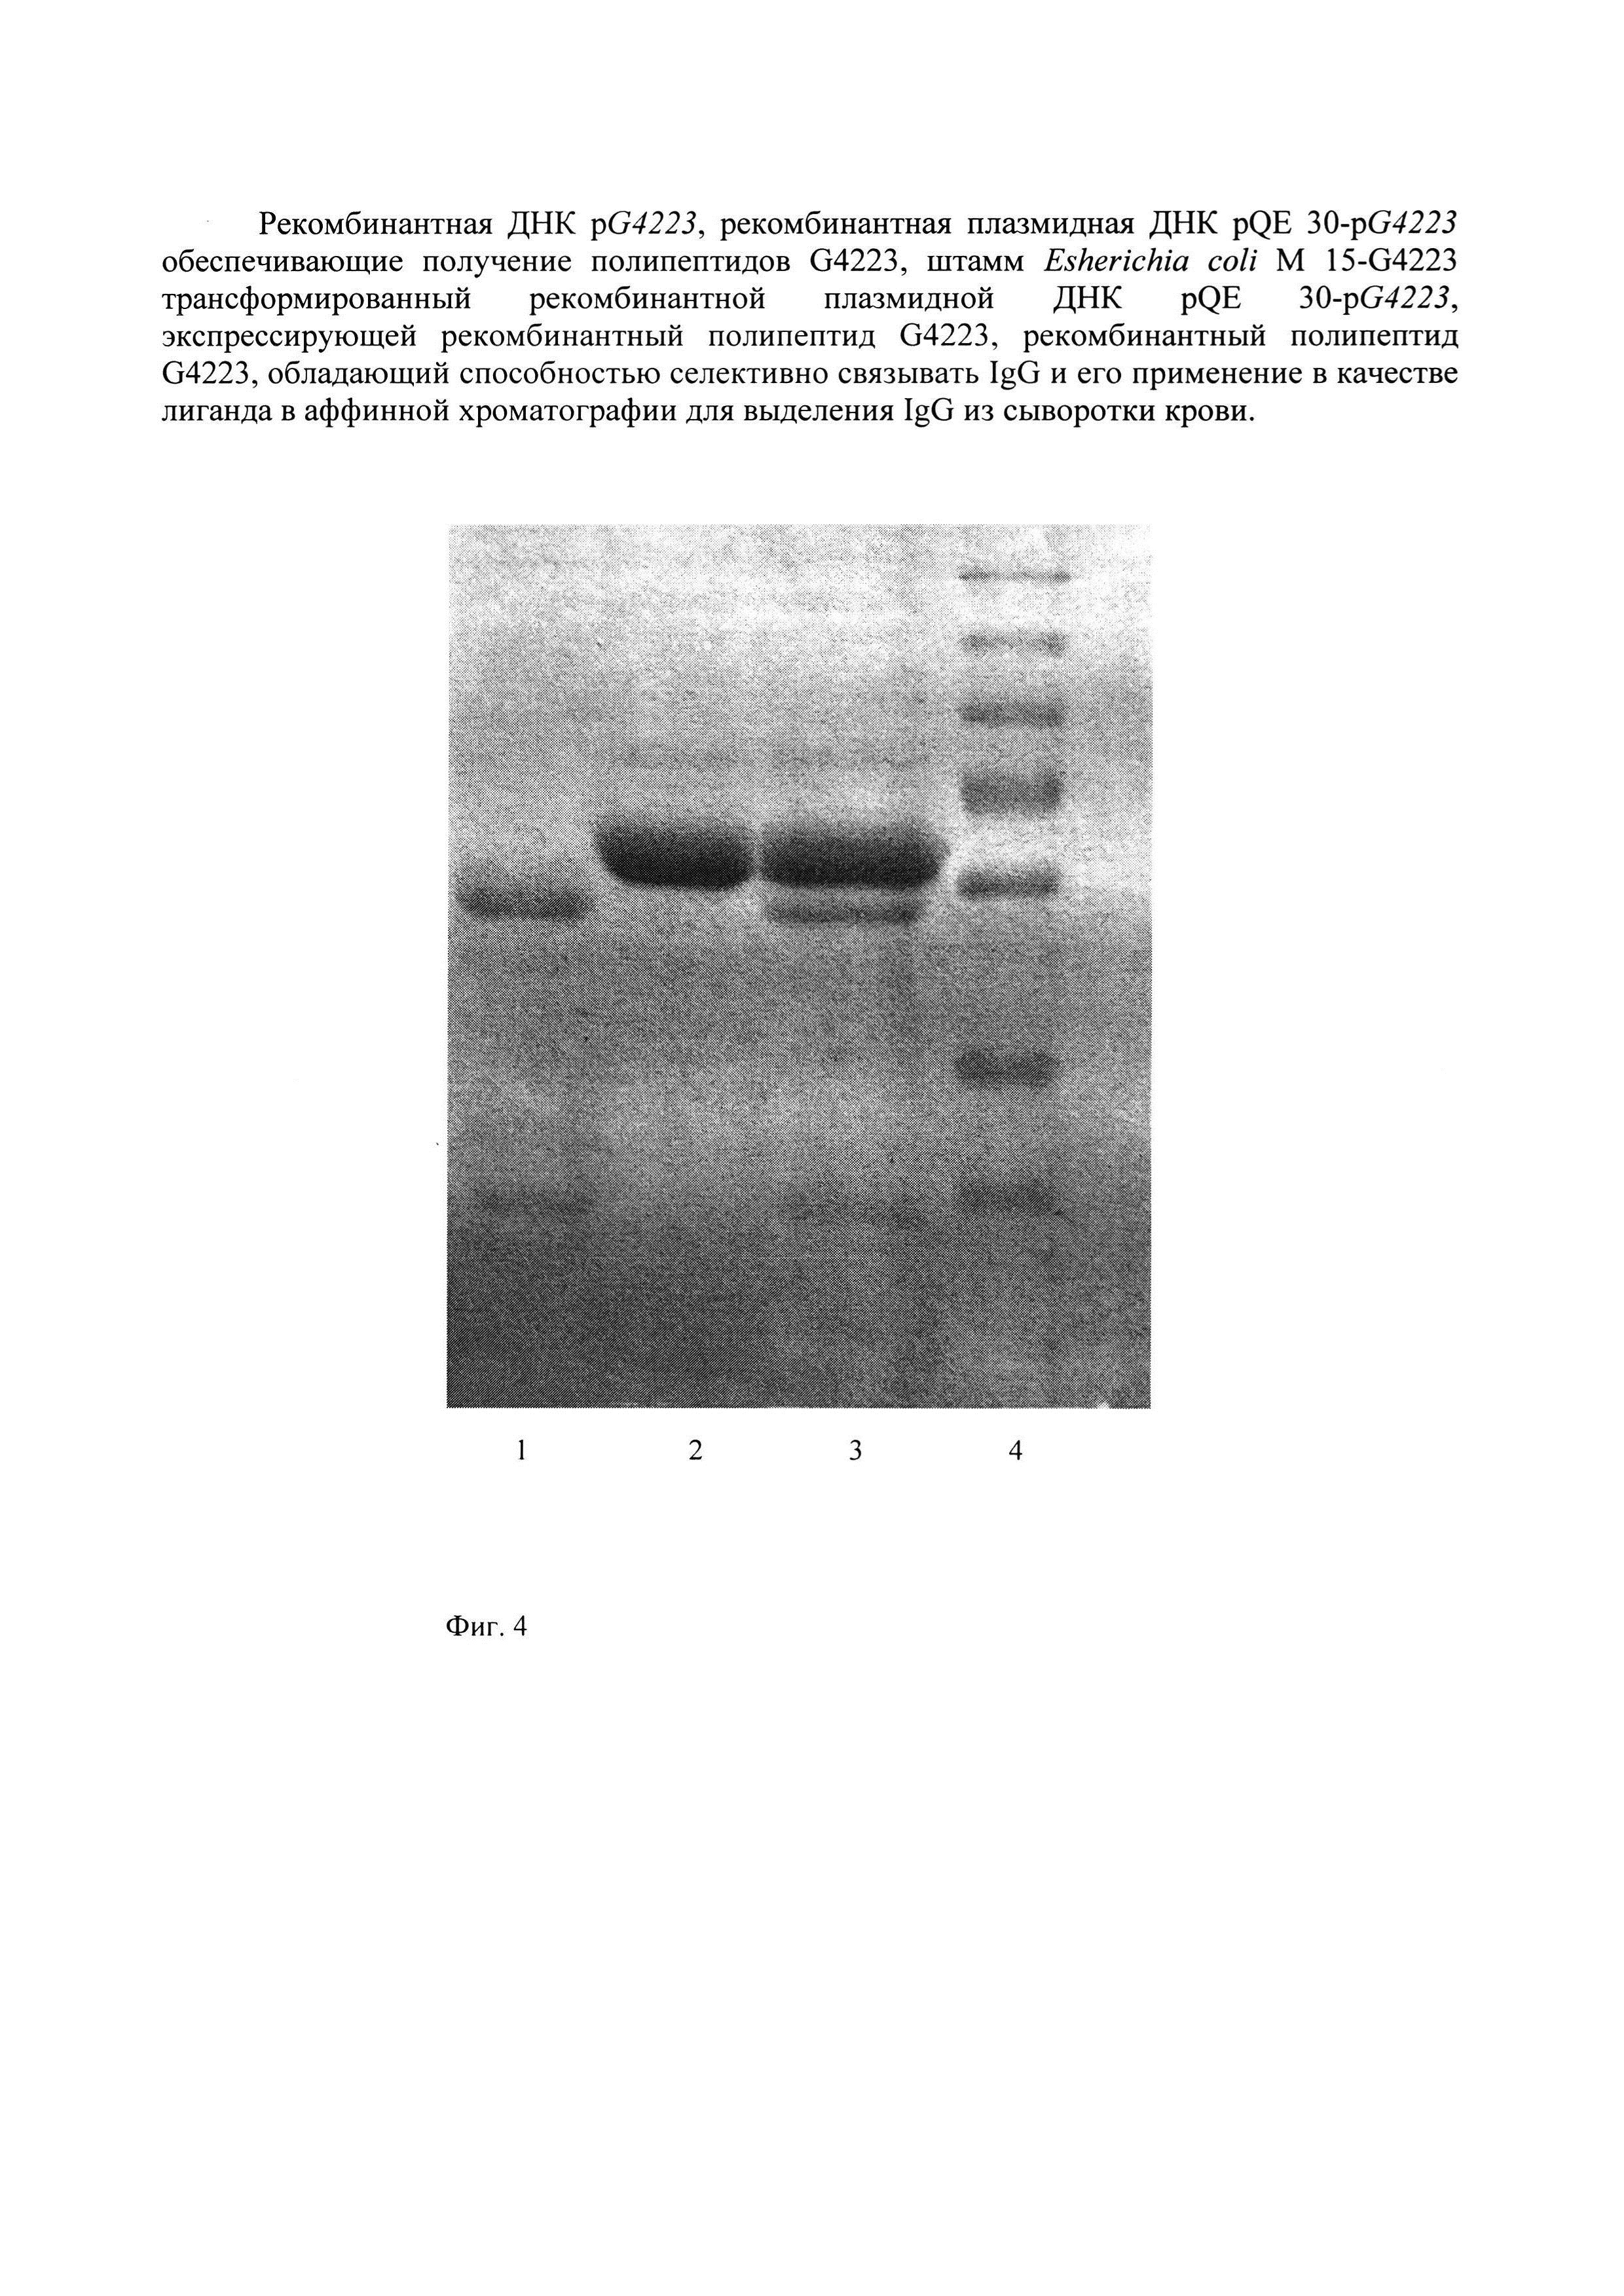 Рекомбинантные ДНК pG4223 и плазмидная ДНК pQE 30-pG4223, штамм Escherichia coli M 15-G4223, обеспечивающие получение полипептида G4223, селективно связывающего IgG, и его применение в аффинной хроматографии для выделения IgG